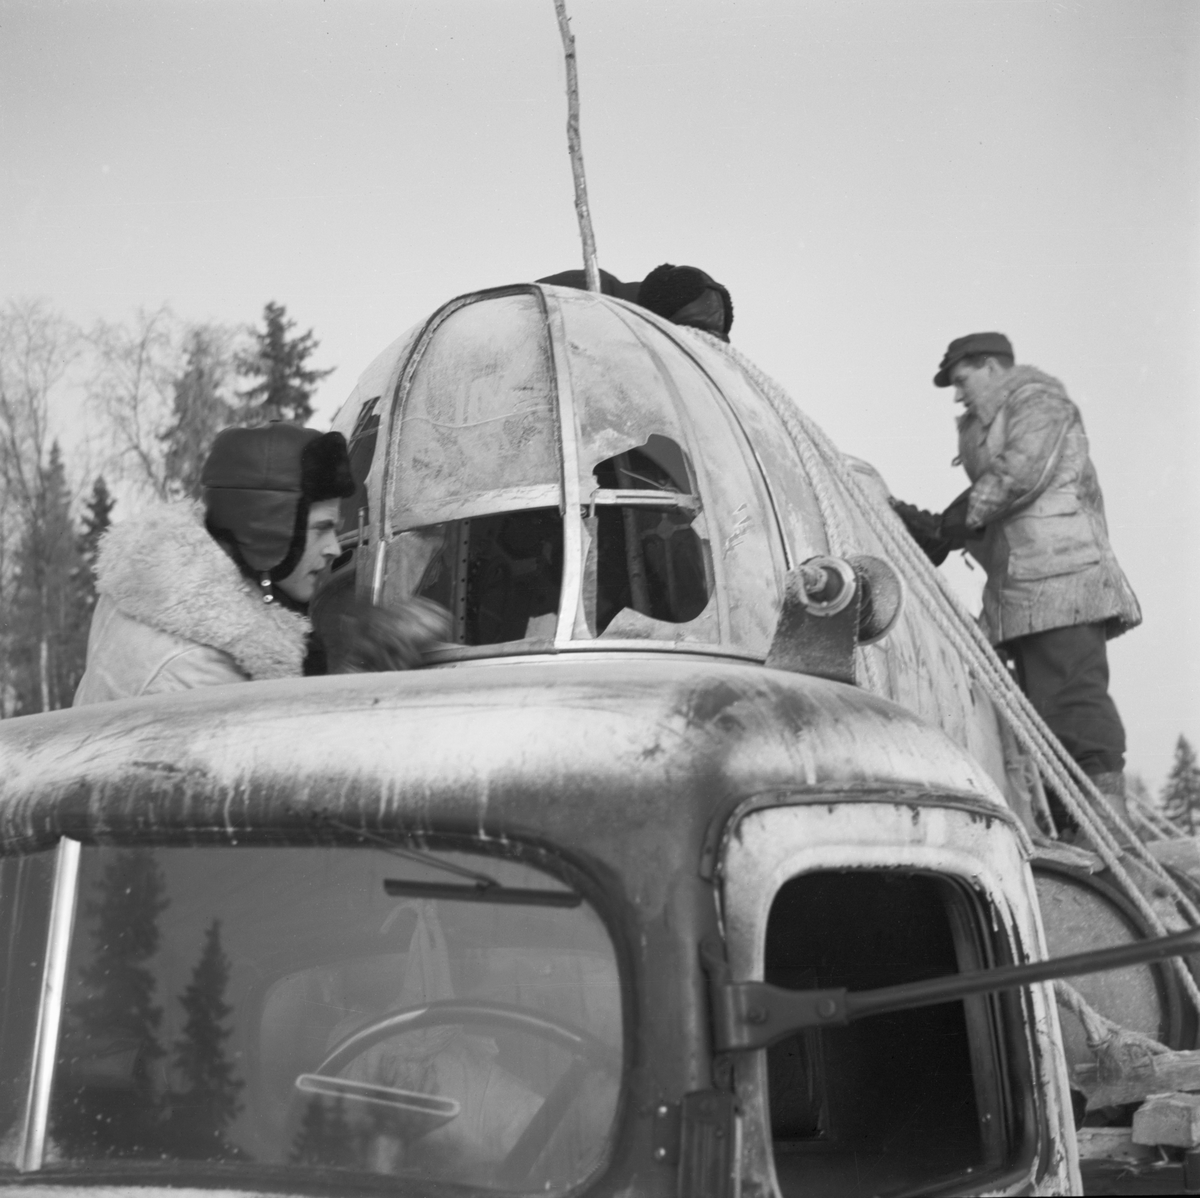 Transport av nedskjutet sovjetiskt flygplan DB-3 vid Svenska frivilligkåren i Finland, F 19. Säkring av flygplanet lastat på vagn efter lastbil. Tre militärer i arbete.